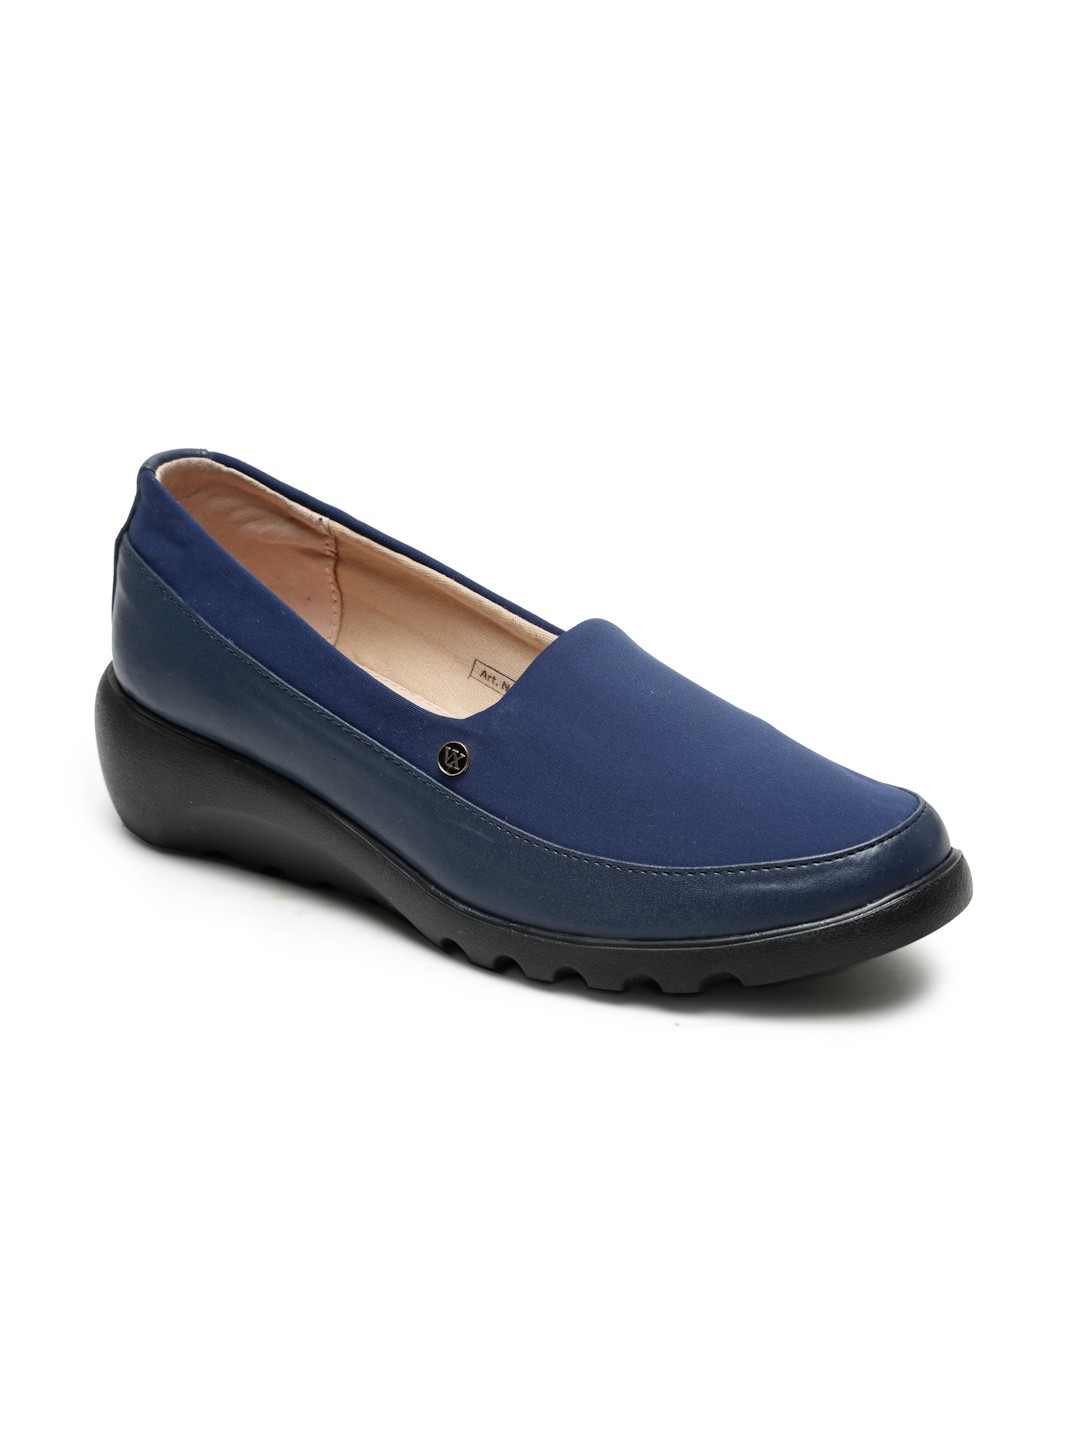 Buy Von Wellx Germany Comfort Women's Blue Casual Shoes Elsa Online in Ghaziabad